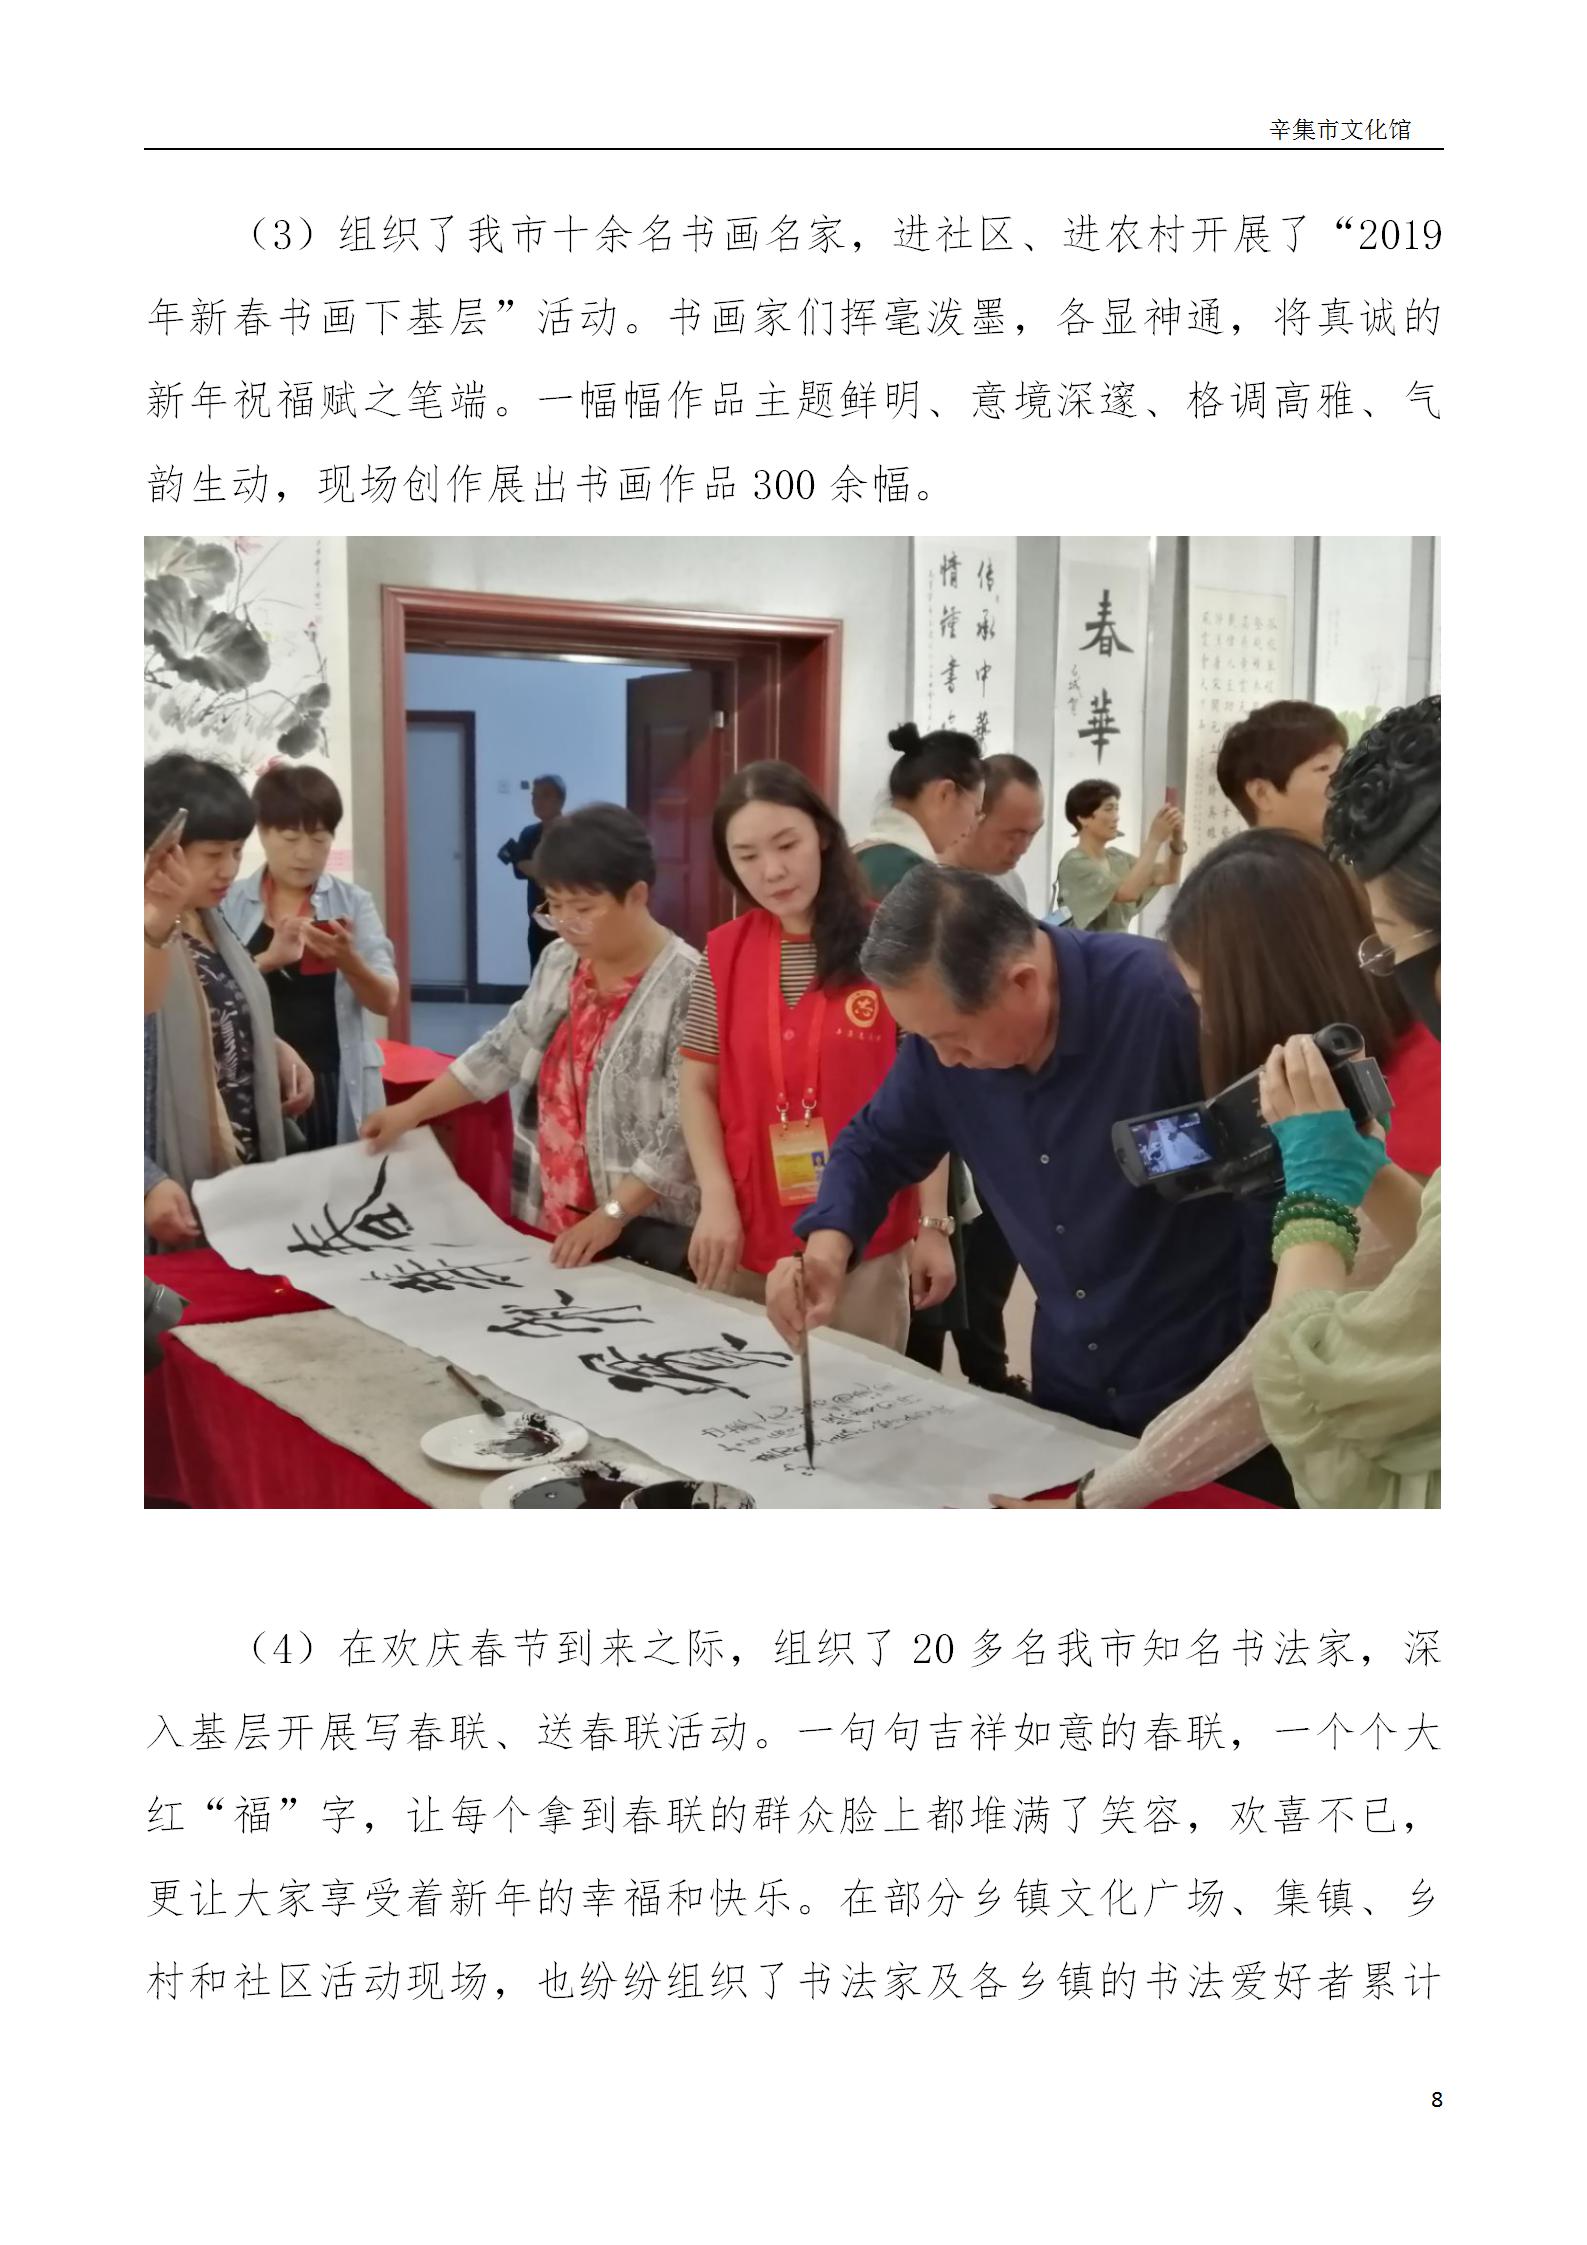 辛集市文化馆2019年年度报告